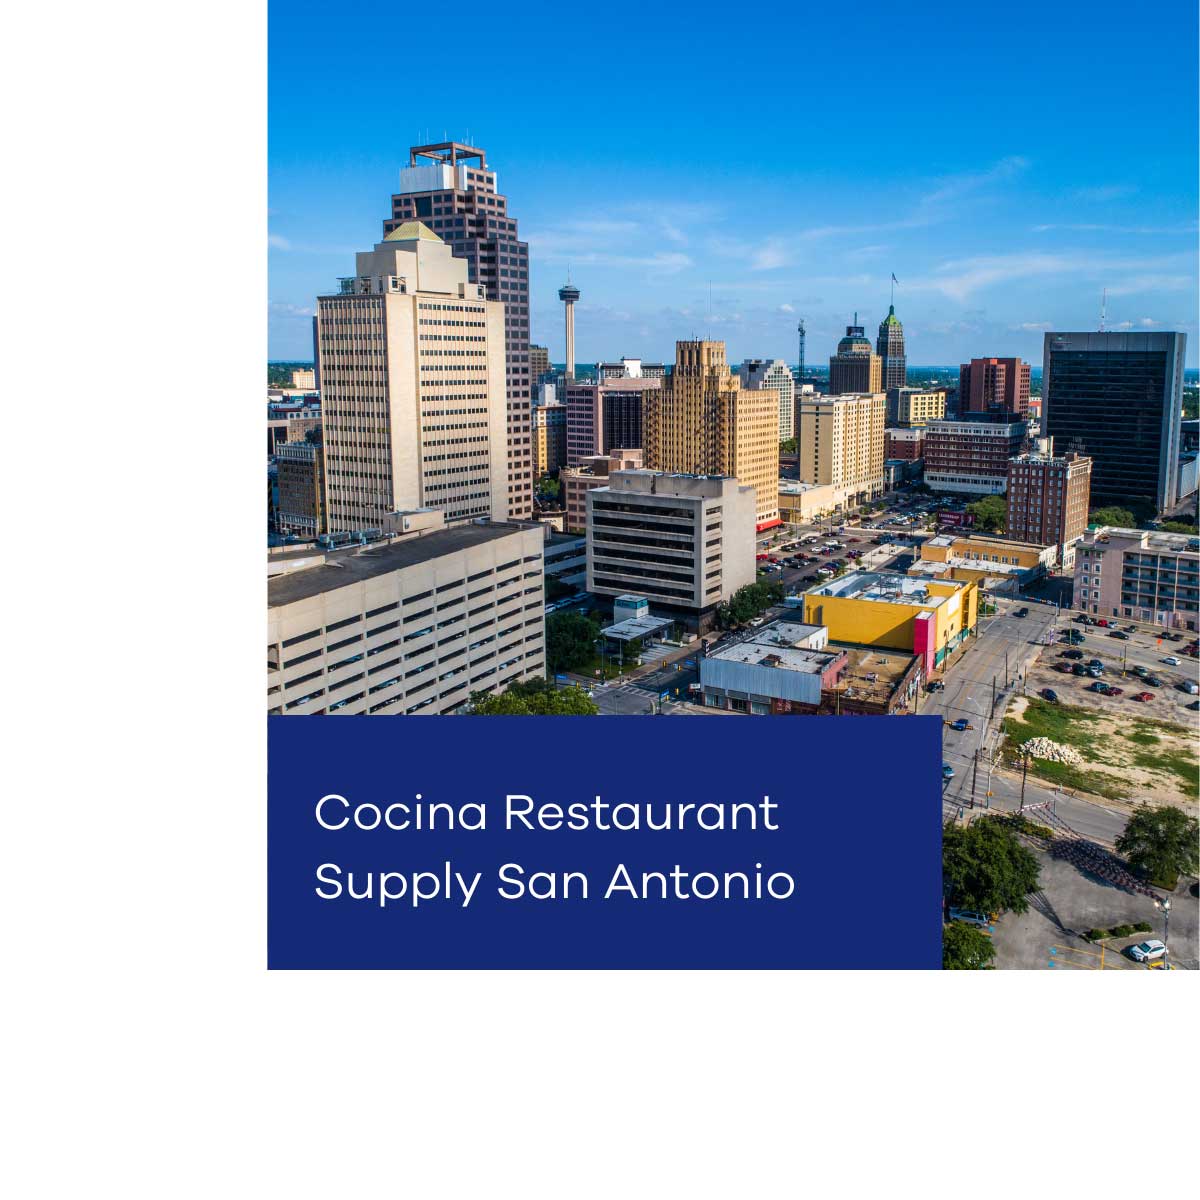 Cocina Restaurant Supply San Antonio